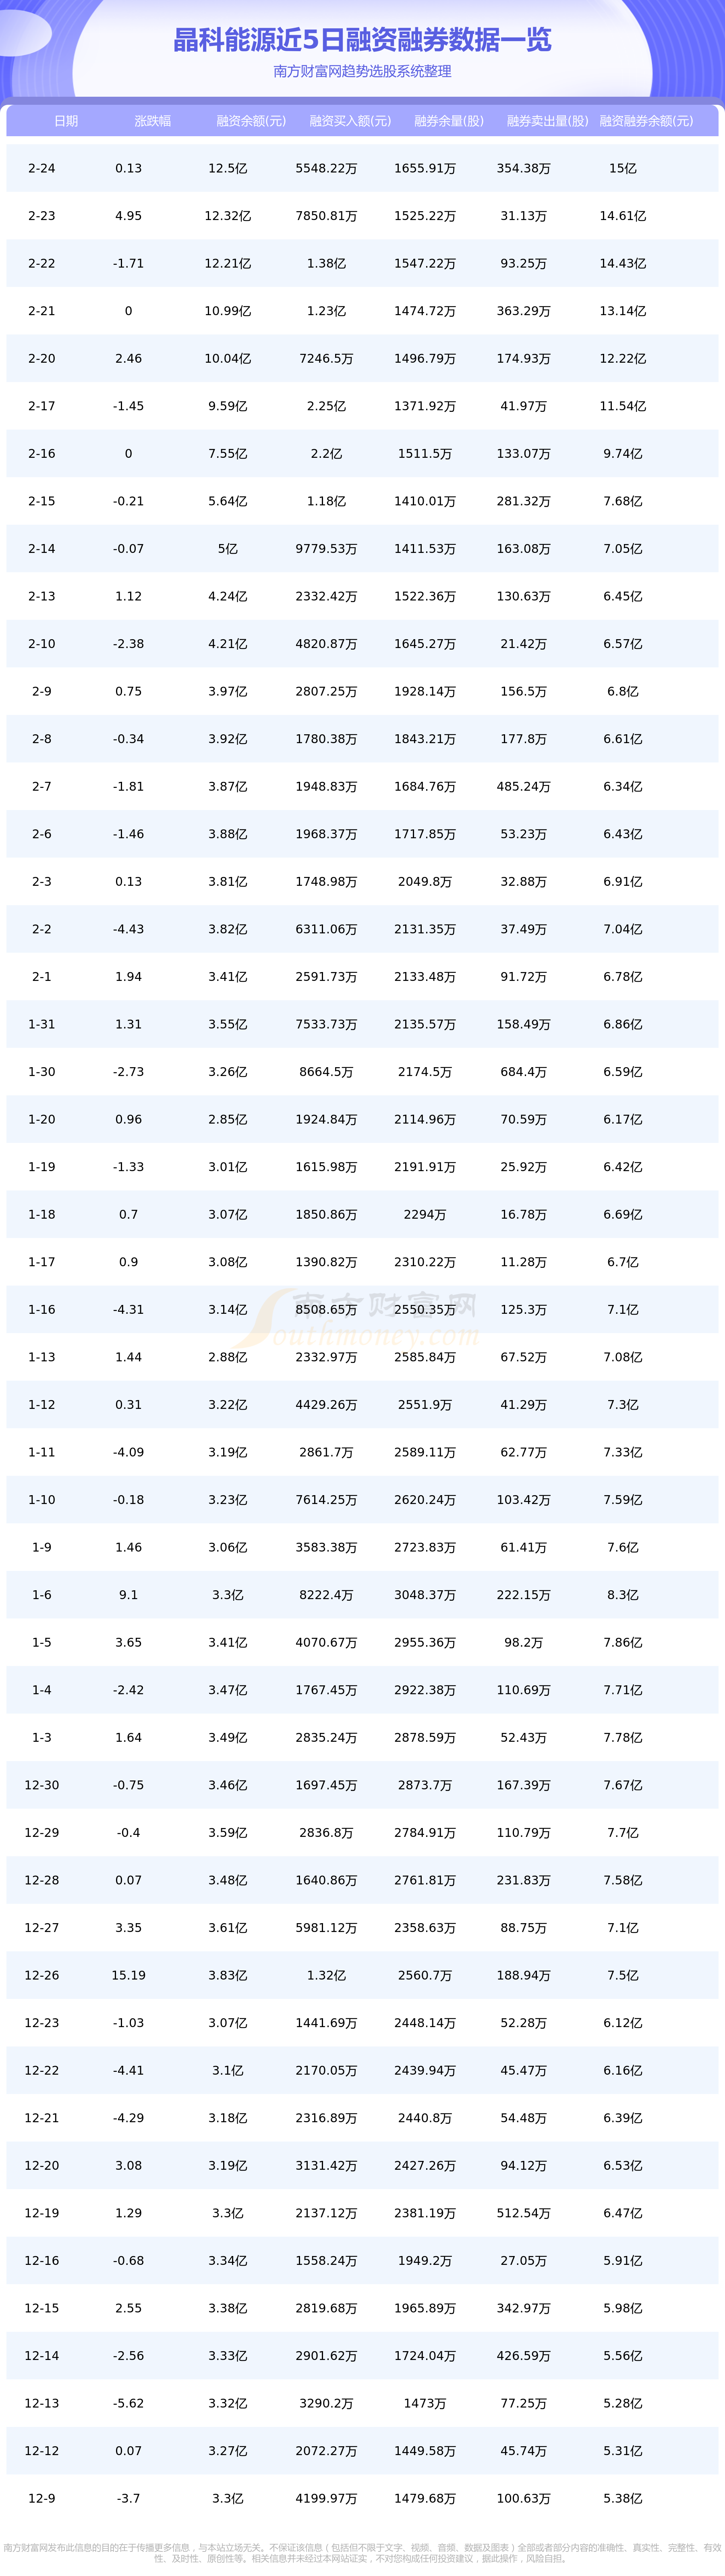 2月24日资金流向统计：晶科能源资金流向一览表